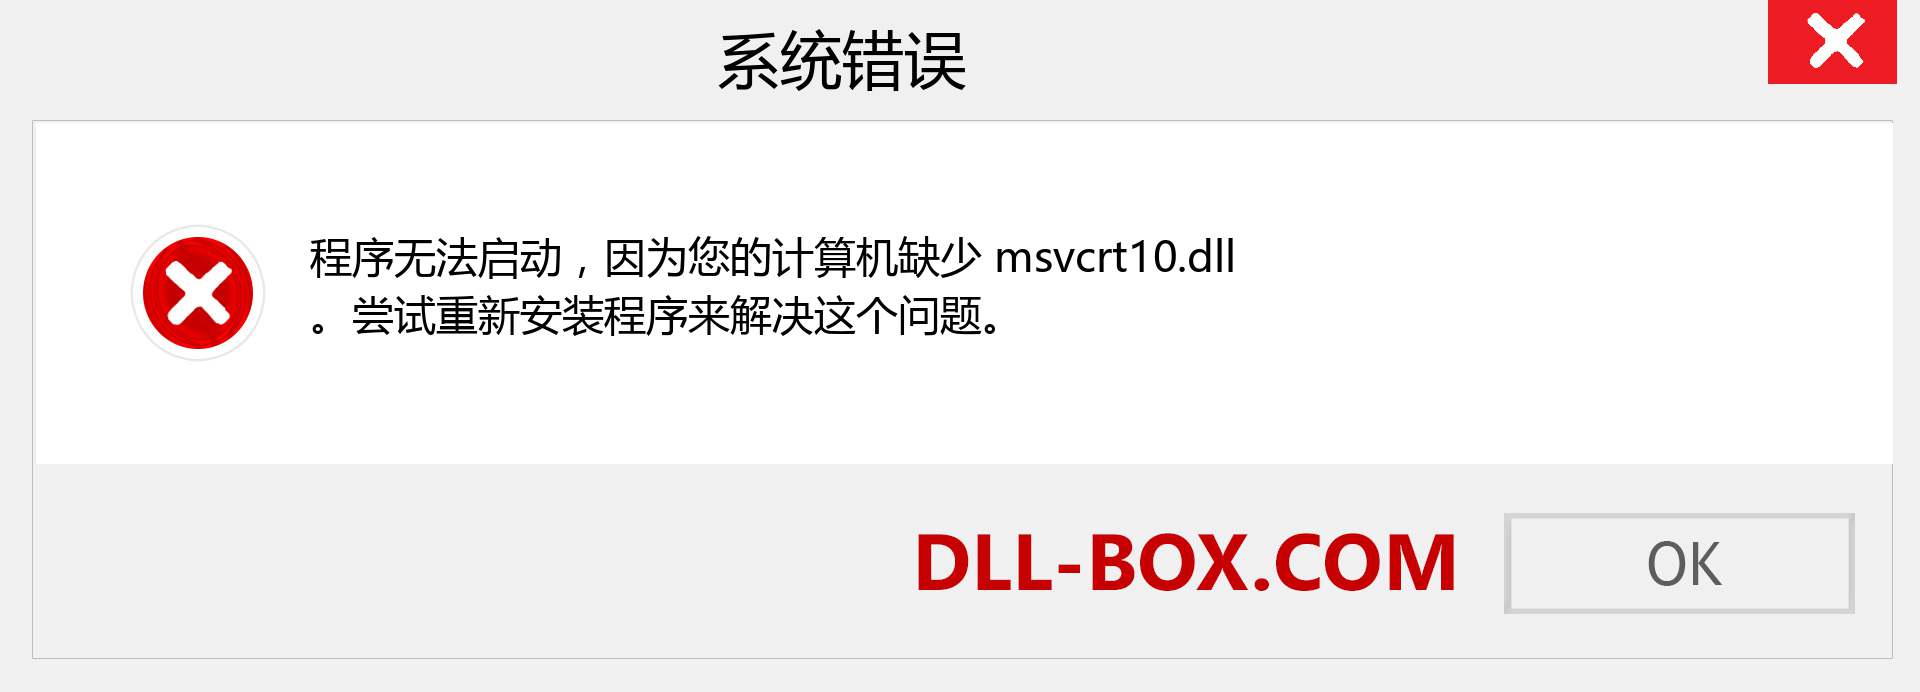 msvcrt10.dll 文件丢失？。 适用于 Windows 7、8、10 的下载 - 修复 Windows、照片、图像上的 msvcrt10 dll 丢失错误